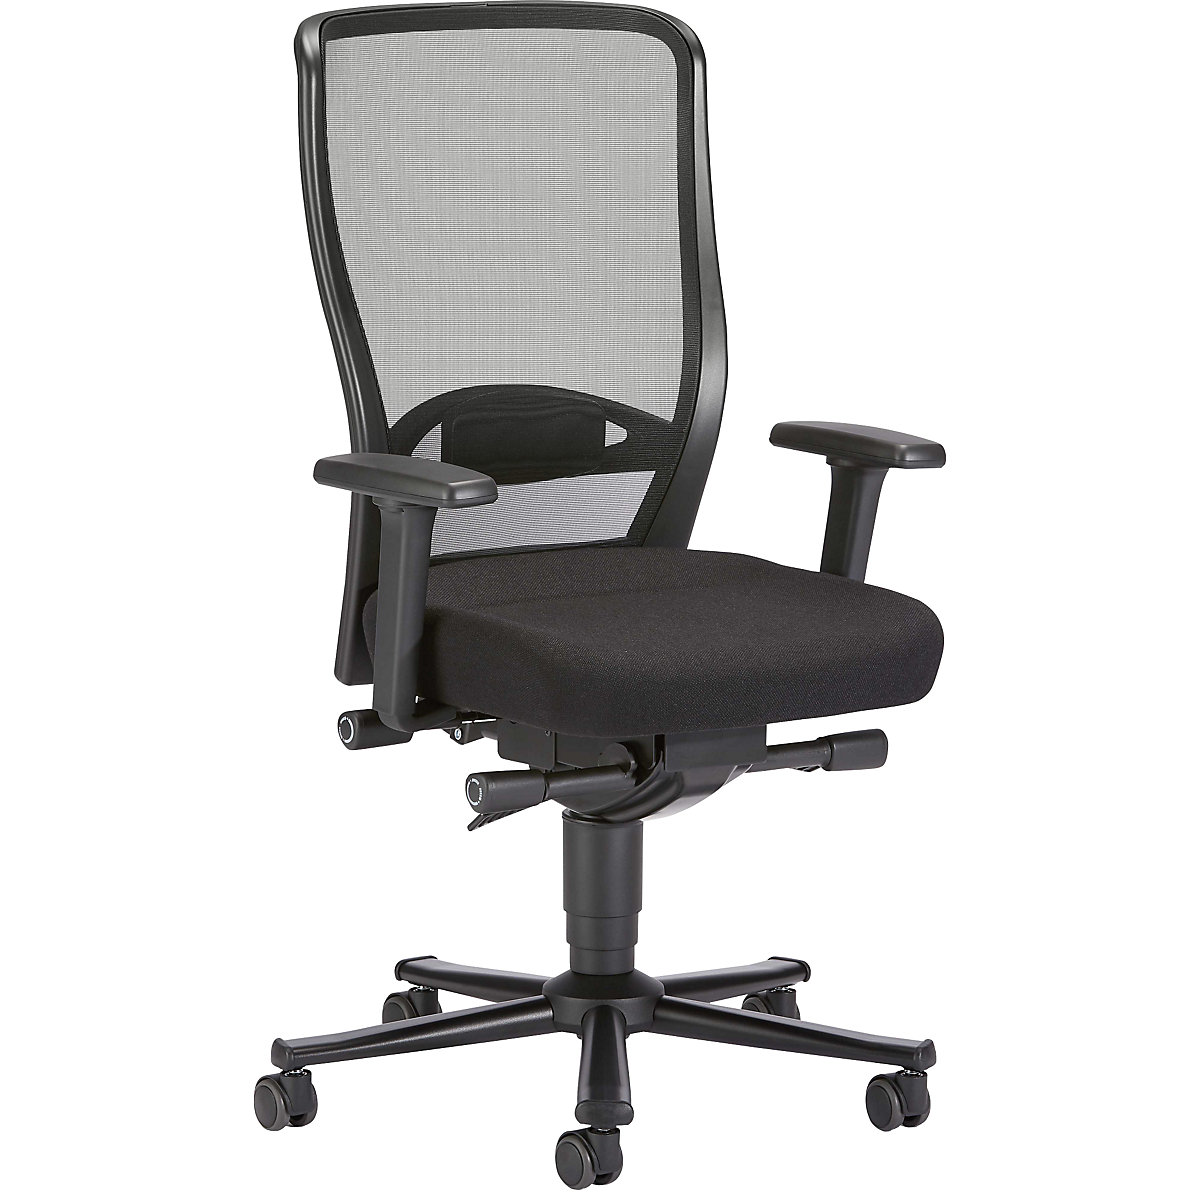 Pracovní otočná židle – bimos, se síťovaným opěradlem, sedák s textilním potahem, černá-4